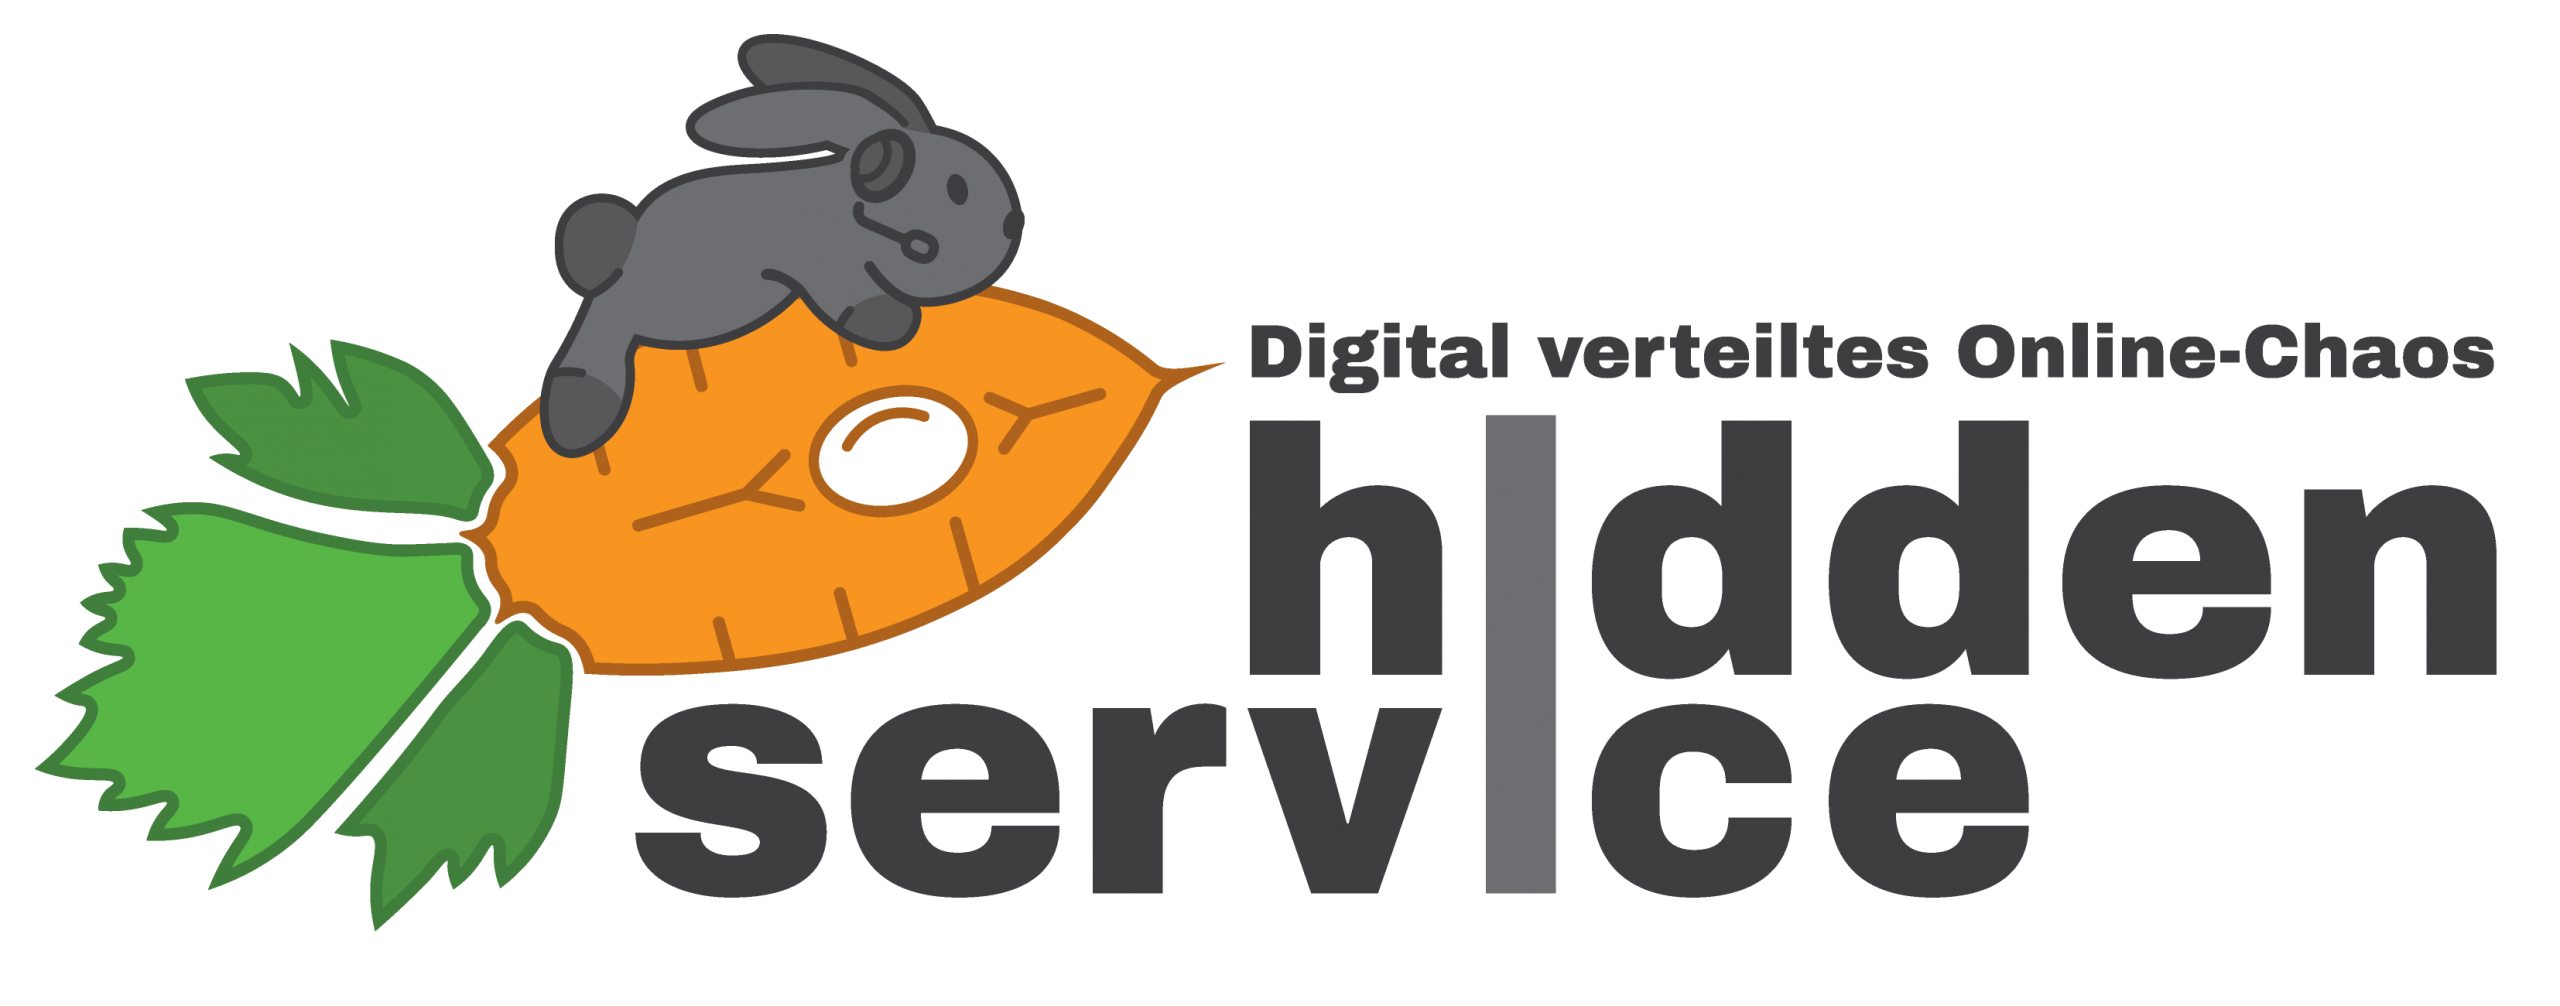 Hidden Service? Ein Digital Verteiltes Online-Chaos